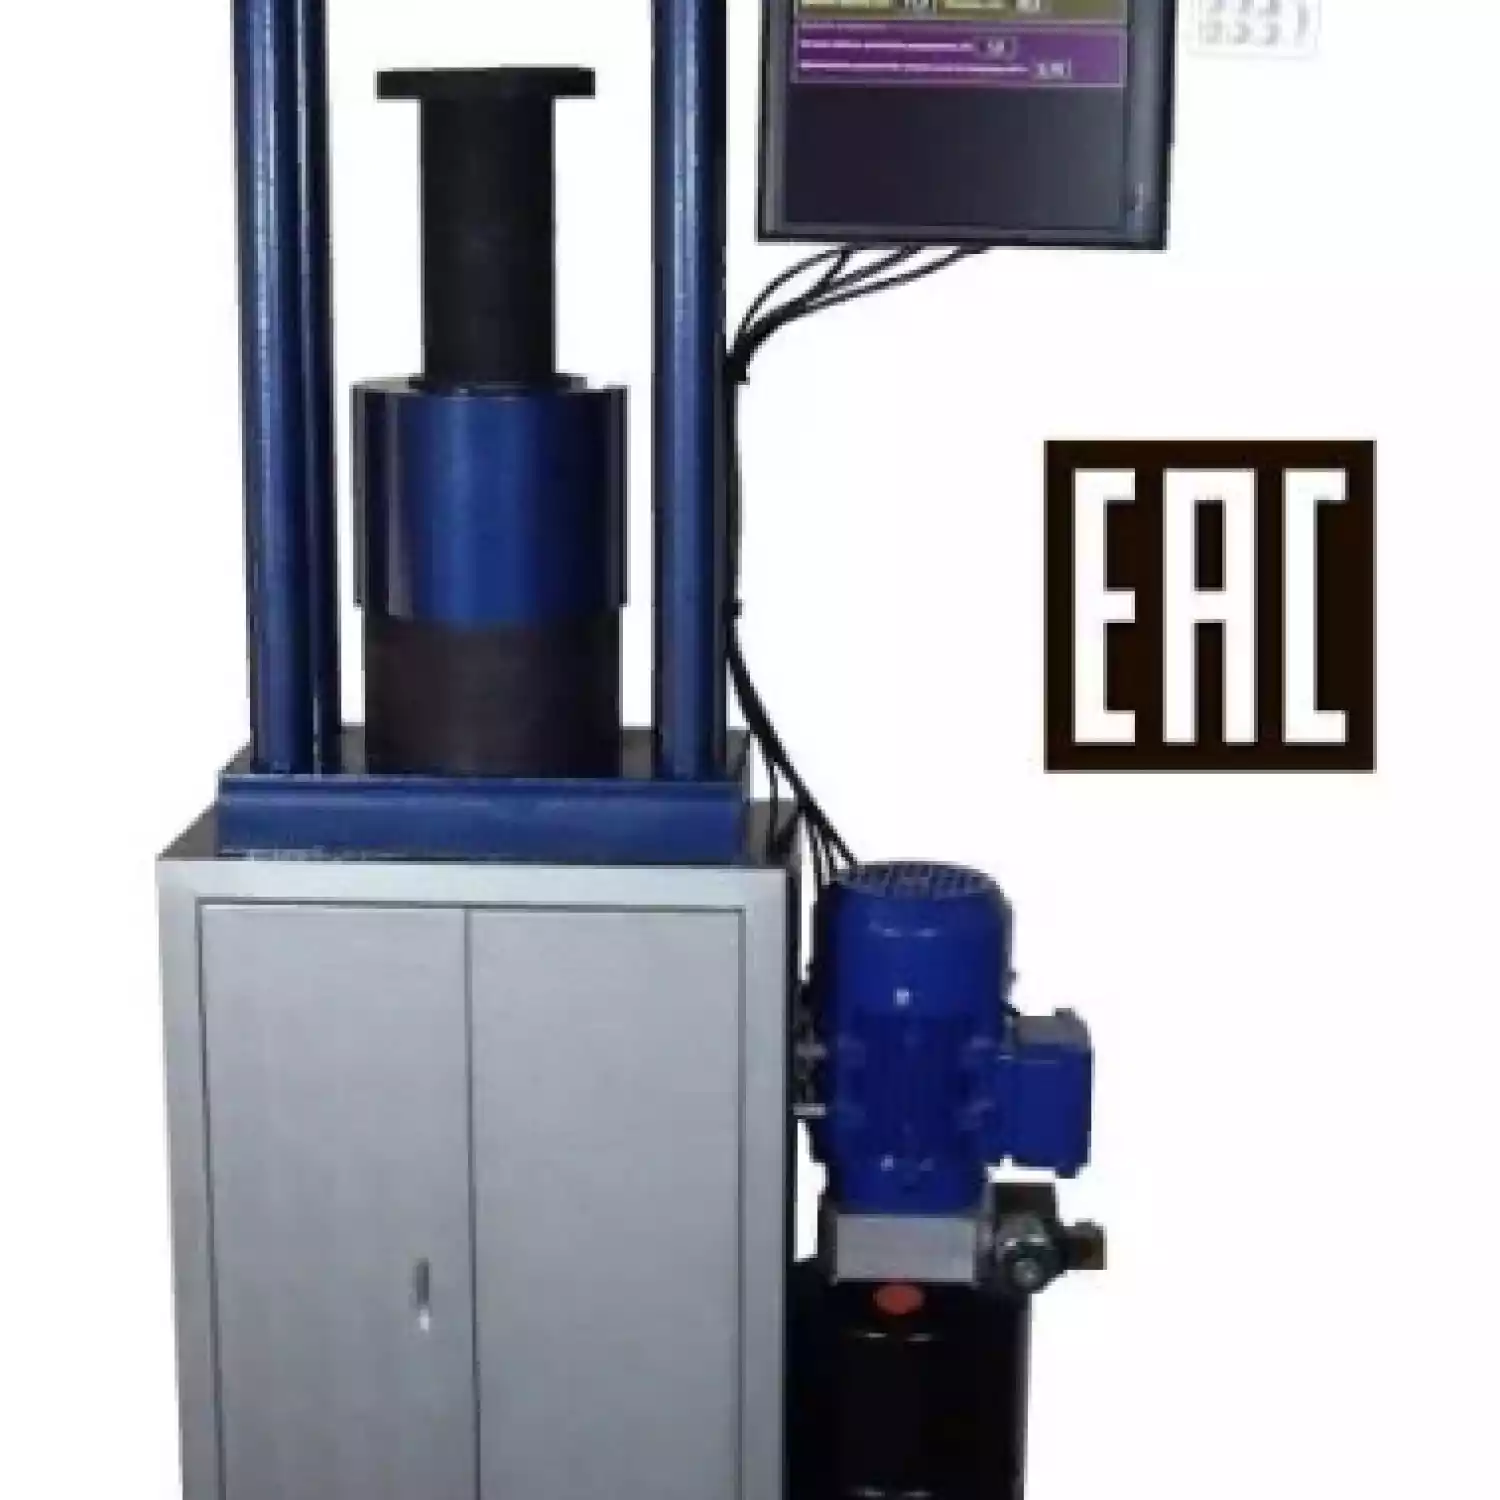 Автоматический испытательный пресс ТП-1-500 “Универсал” (диапазон измерения от 10 до 500 кН) - 1